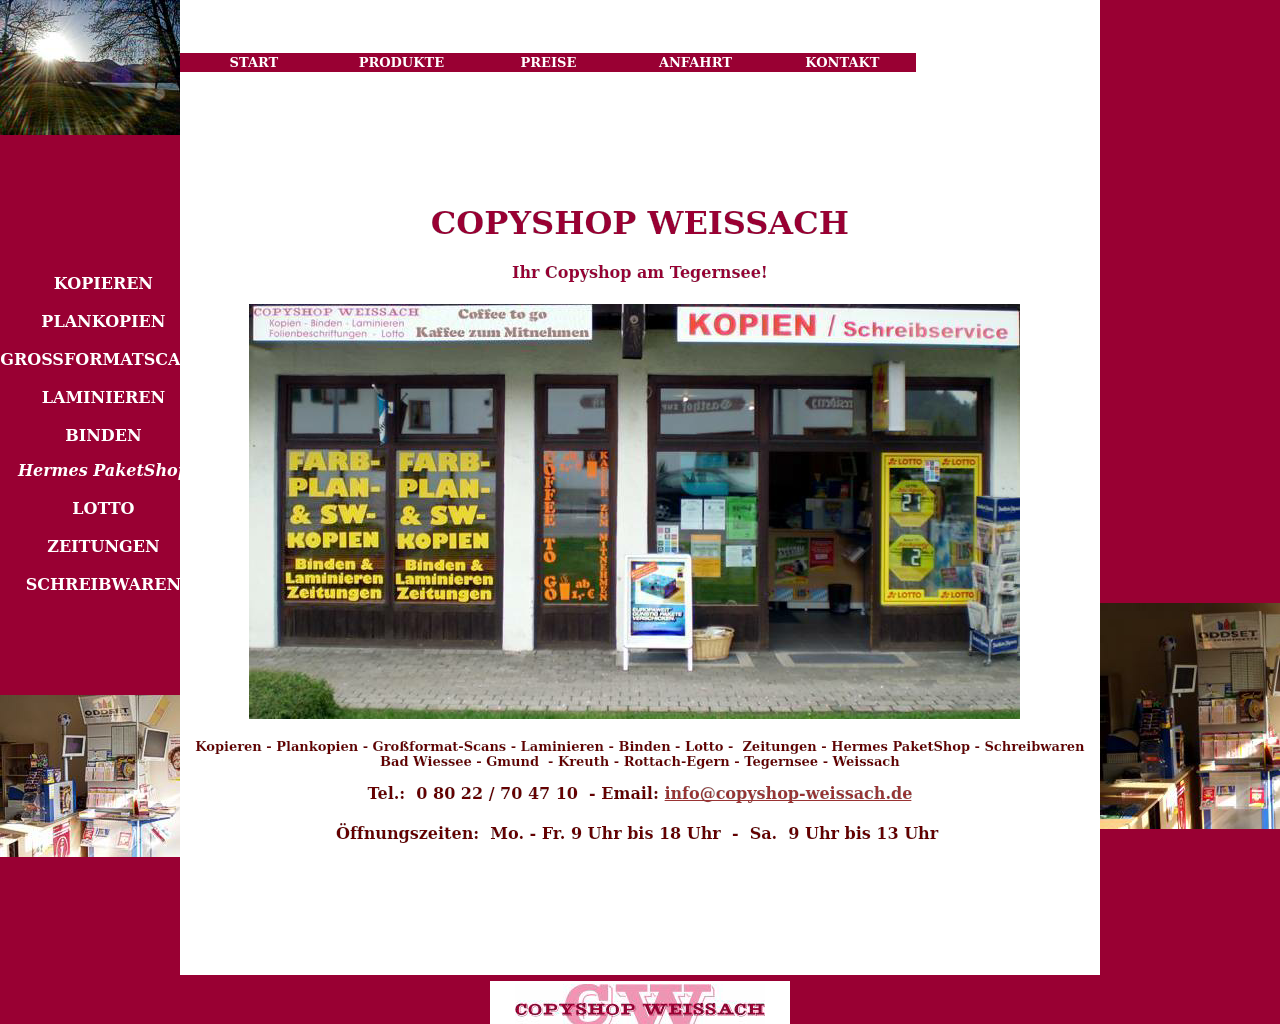 Bild Website copyshop-weissach.de in 1280x1024